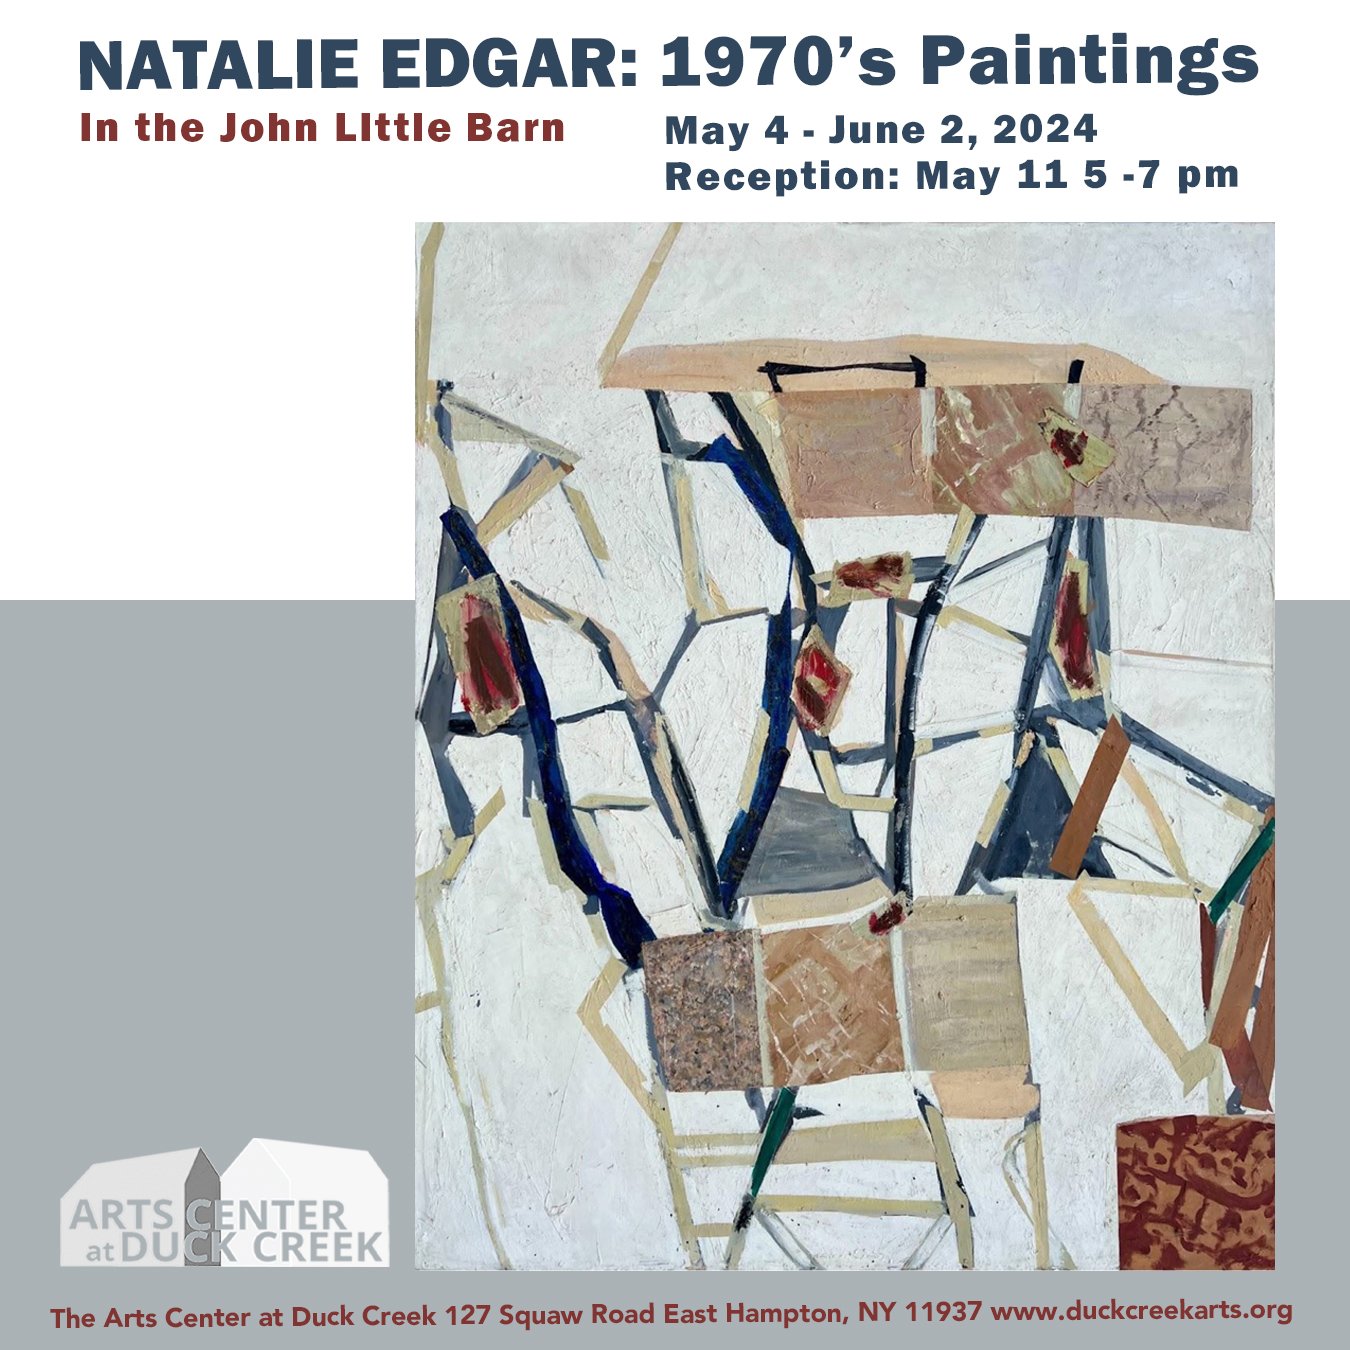 NATALIE EDGAR: 1970’S PAINTINGS  